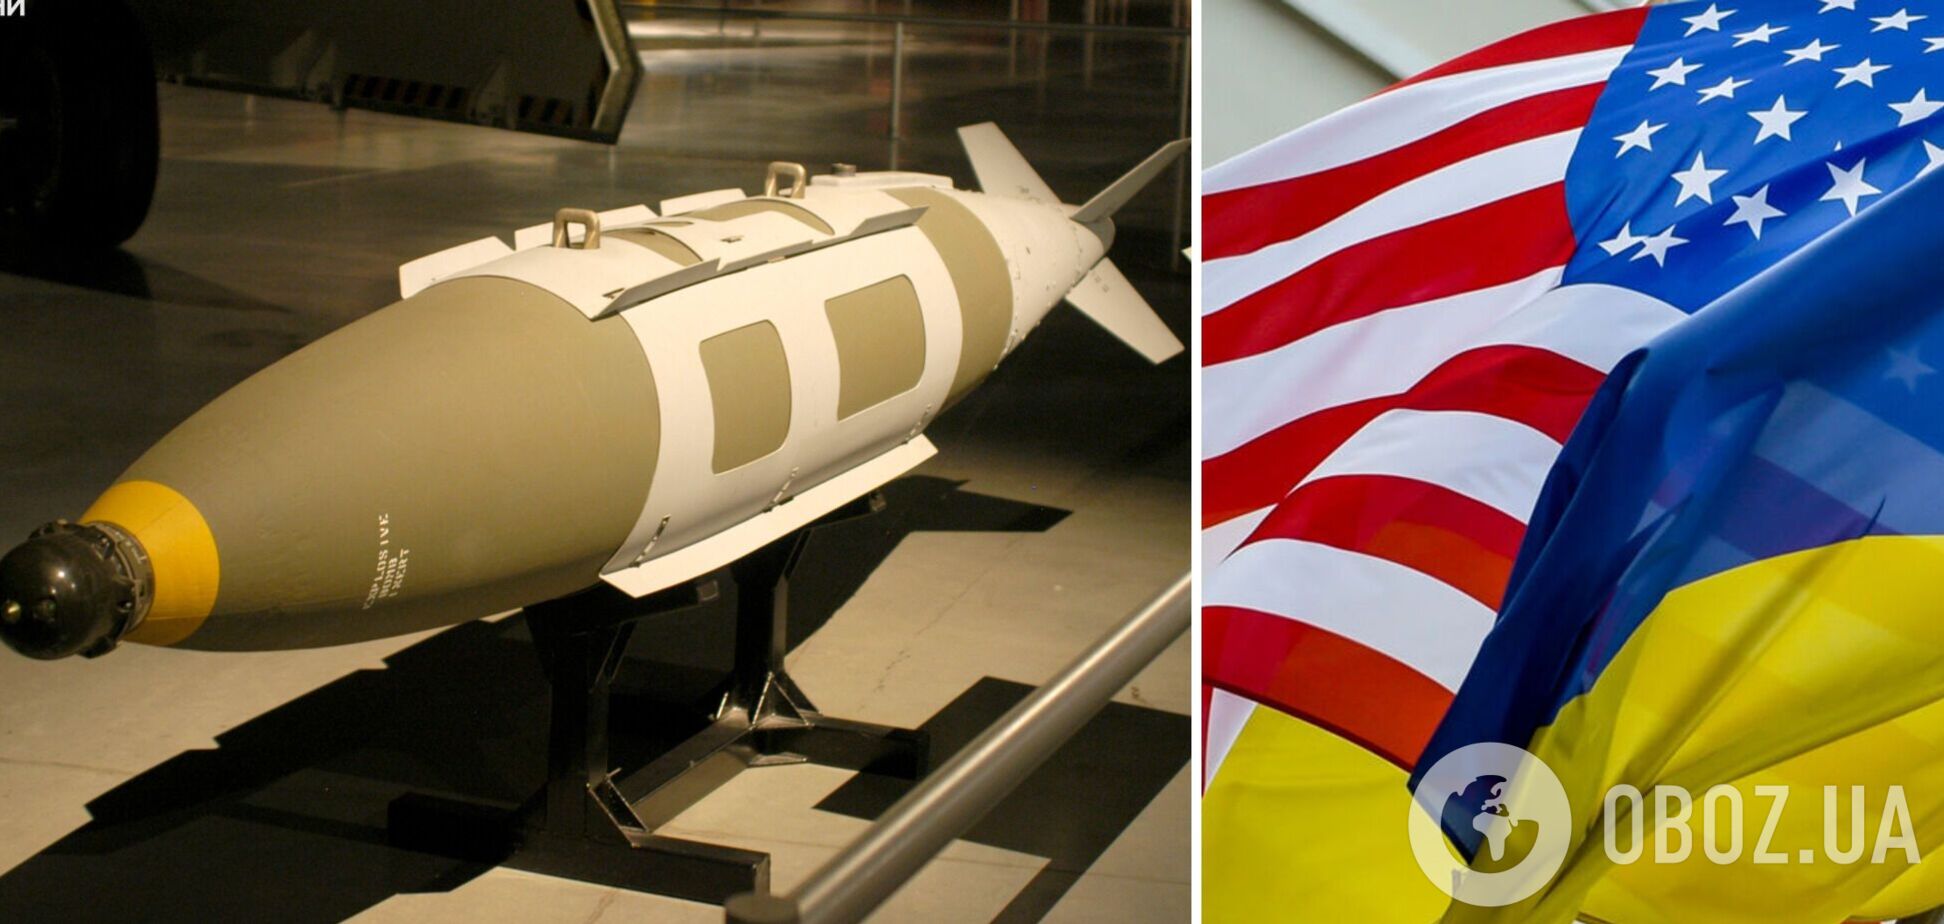 США планируют передать Украине высокоточные 'умные бомбы' уже в следующем пакете помощи — CNN